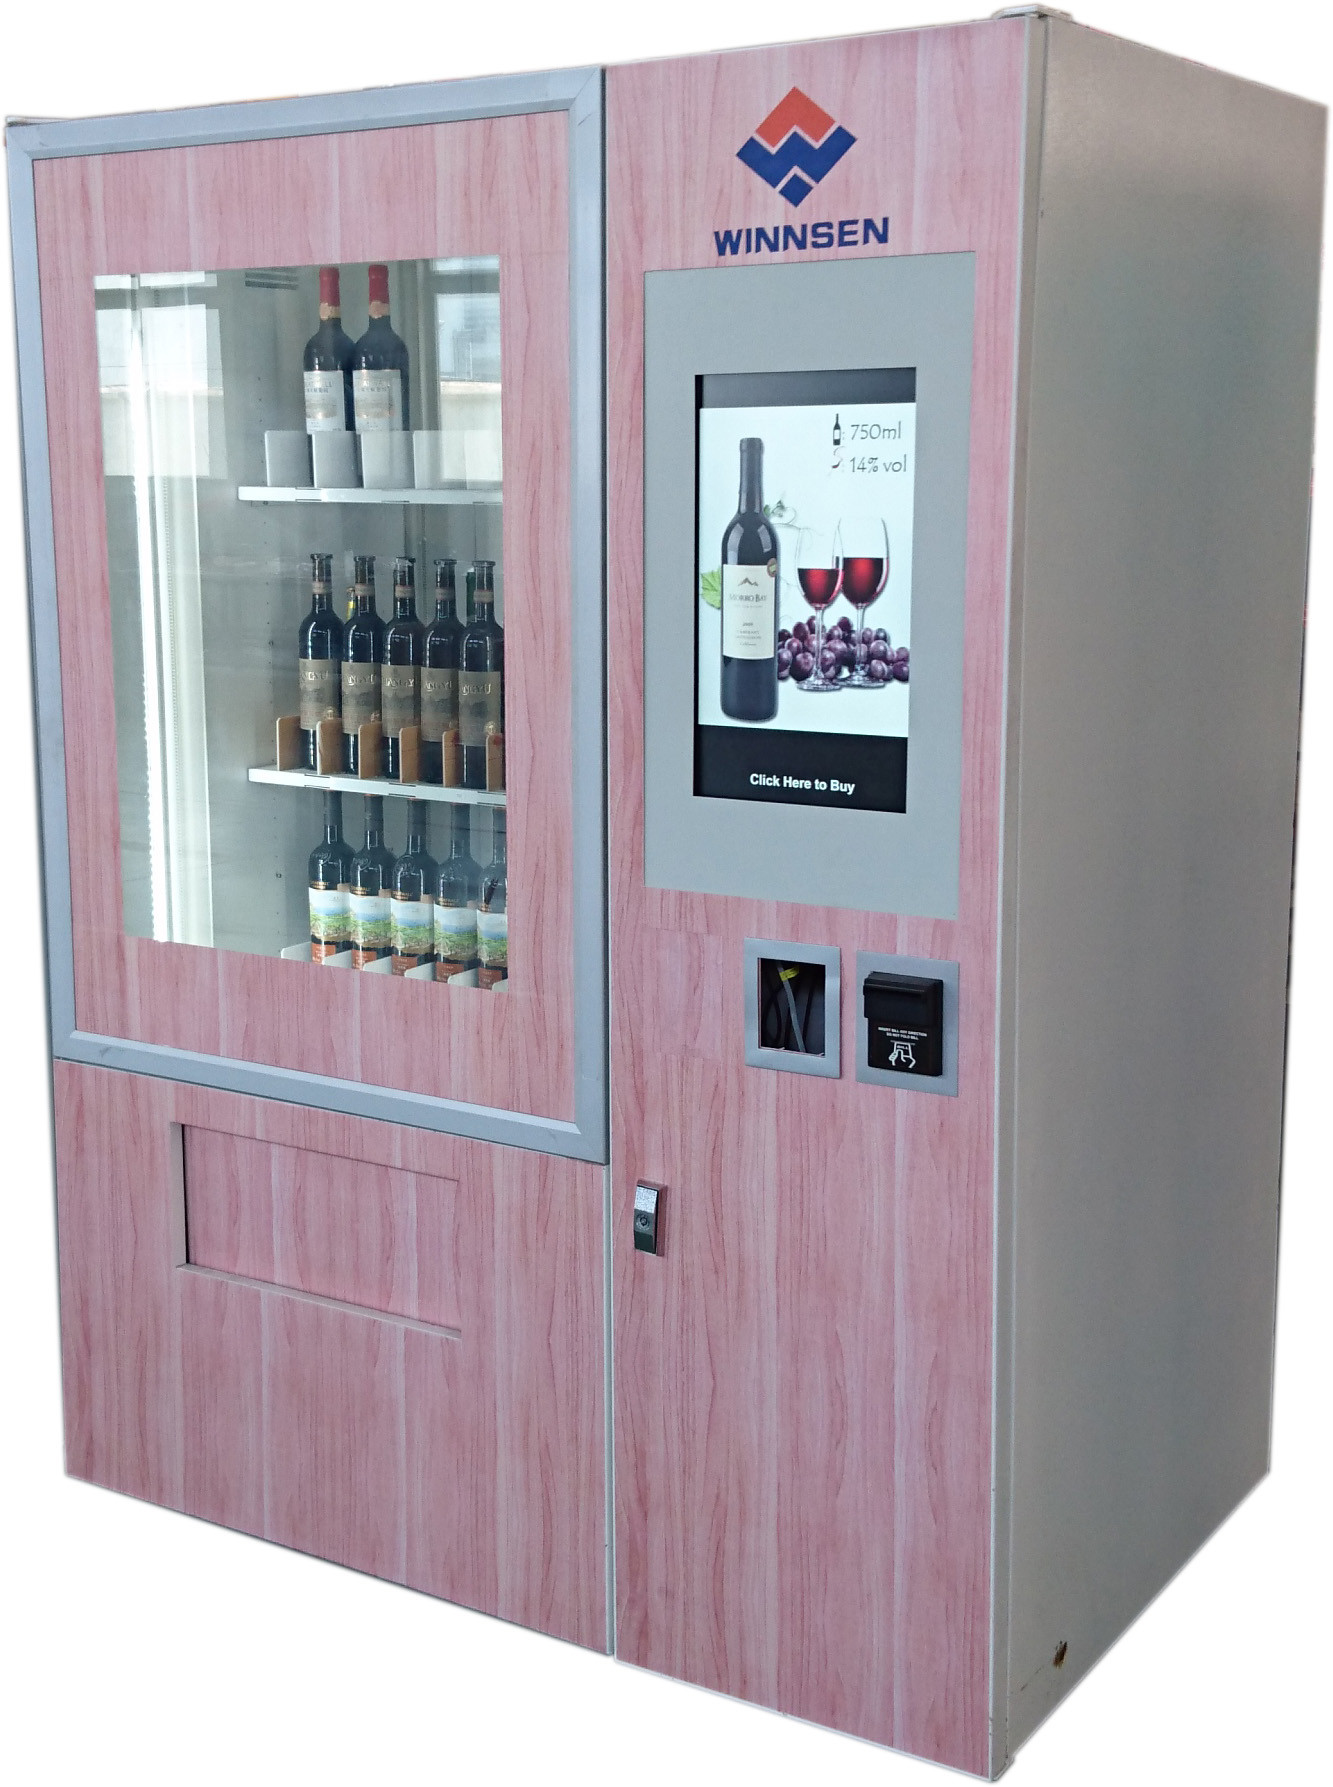 Wine vending machine